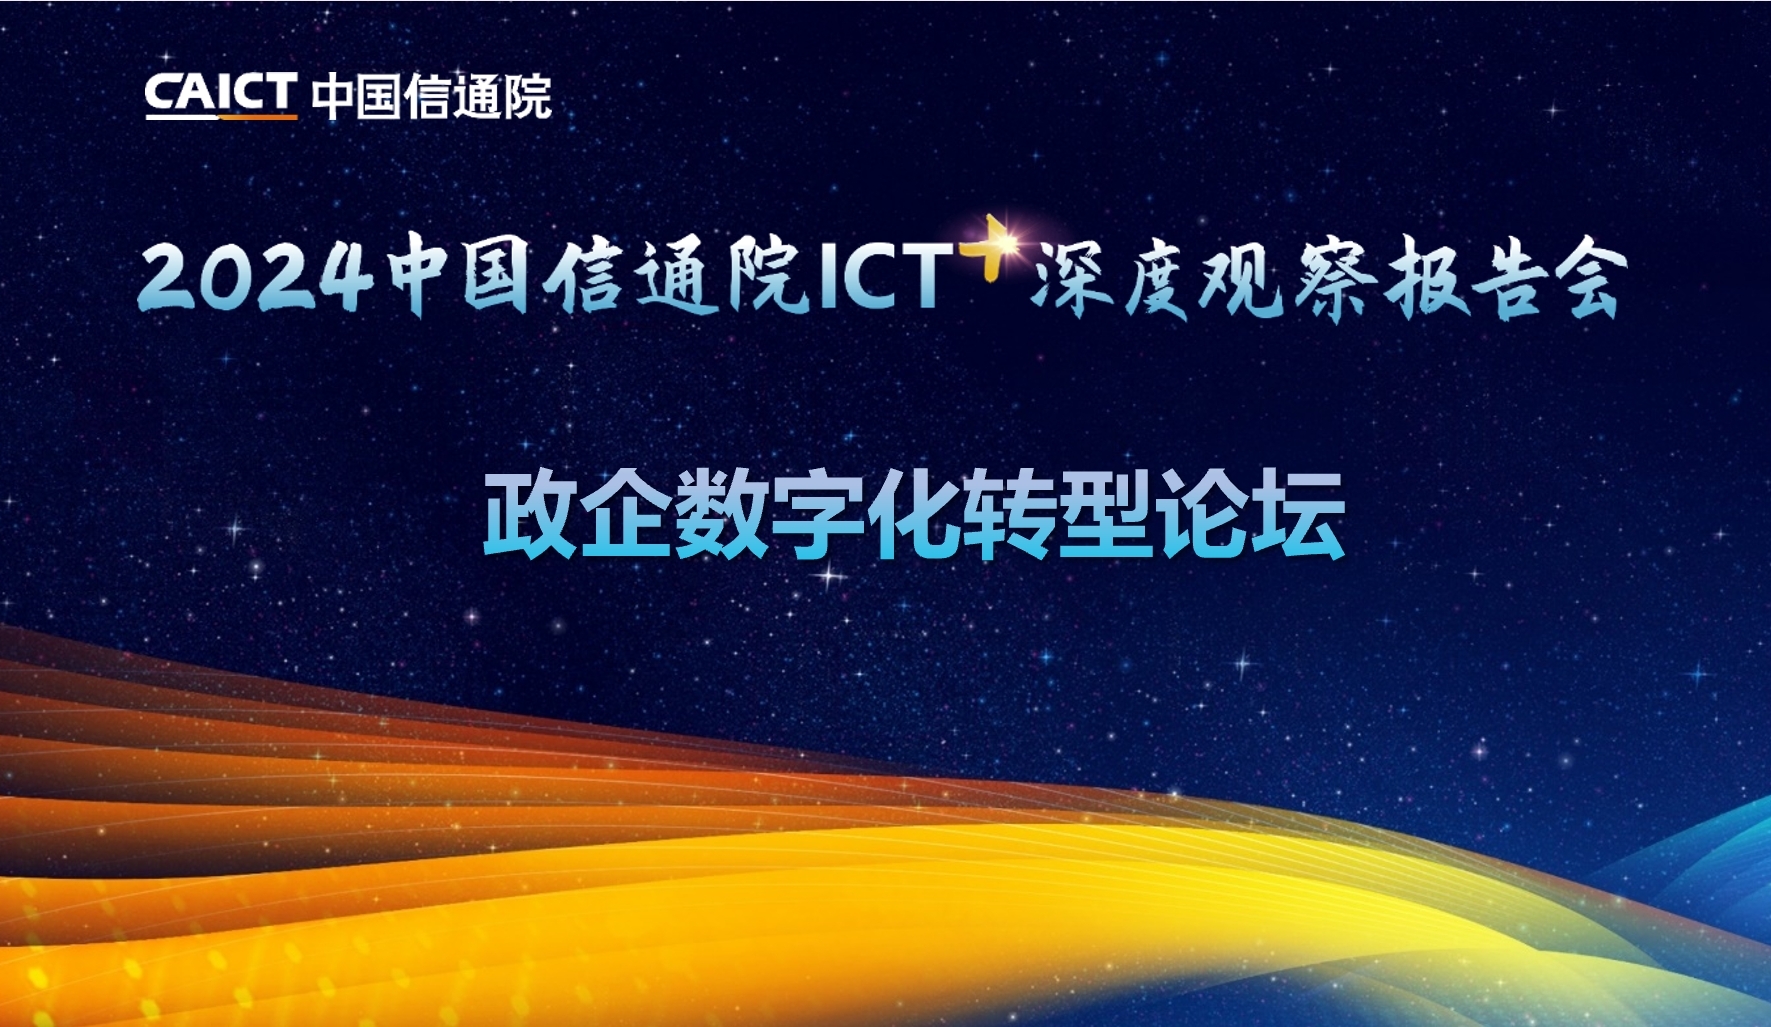 2024中国信通院ICT深度观察报告会 | 政企数字化转型论坛在京召开